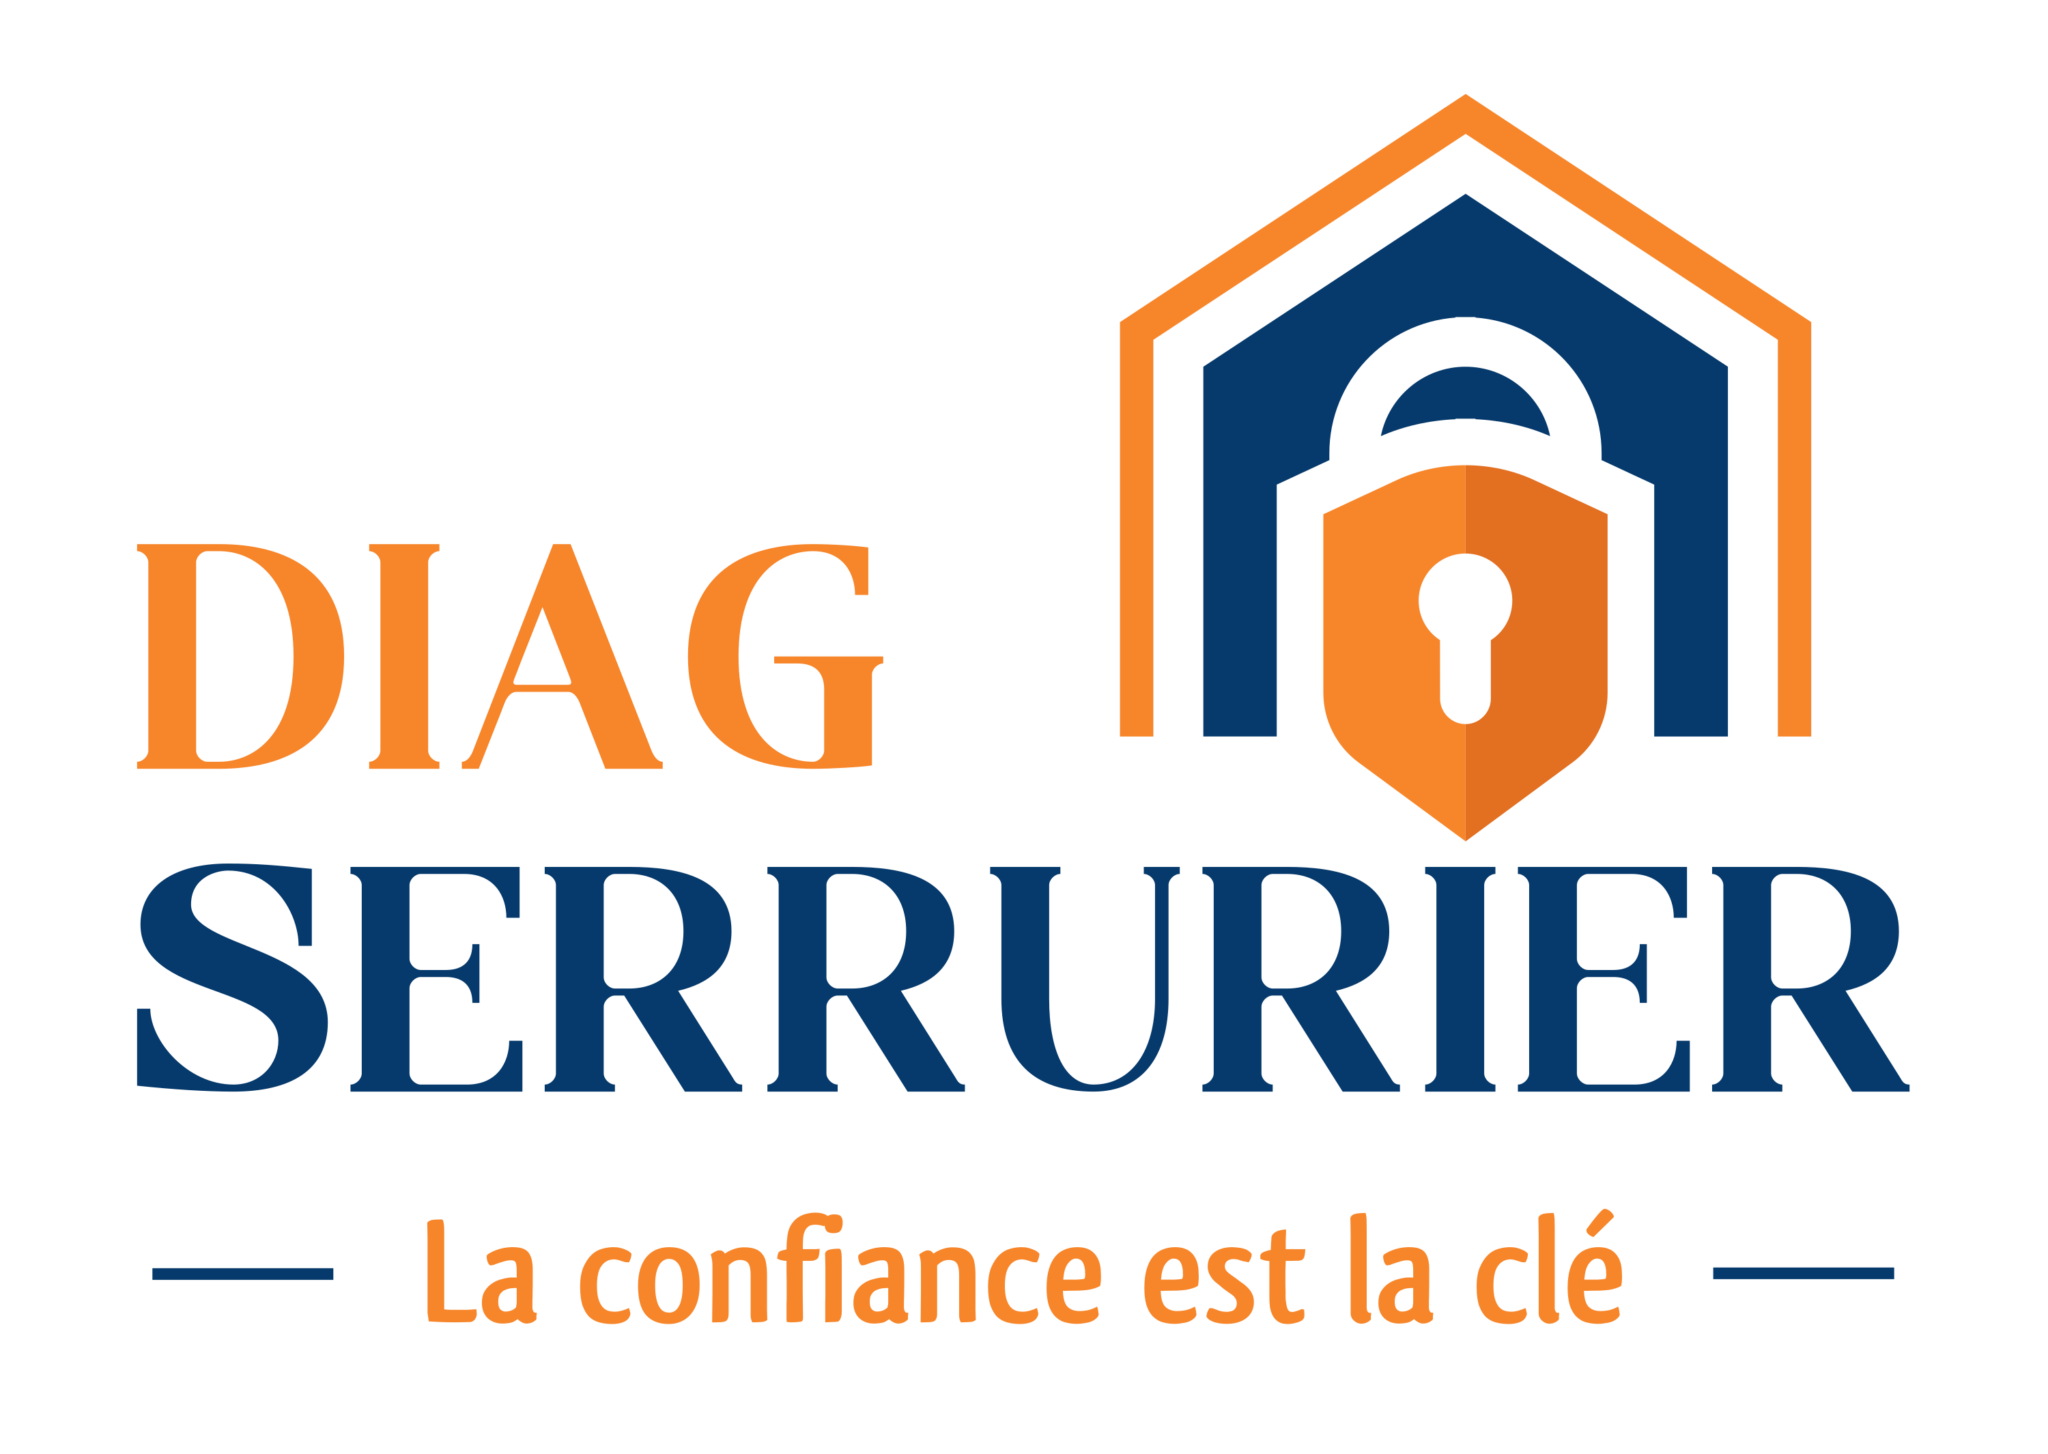 Logo de DIAG serrurier, société de travaux en Serrurier